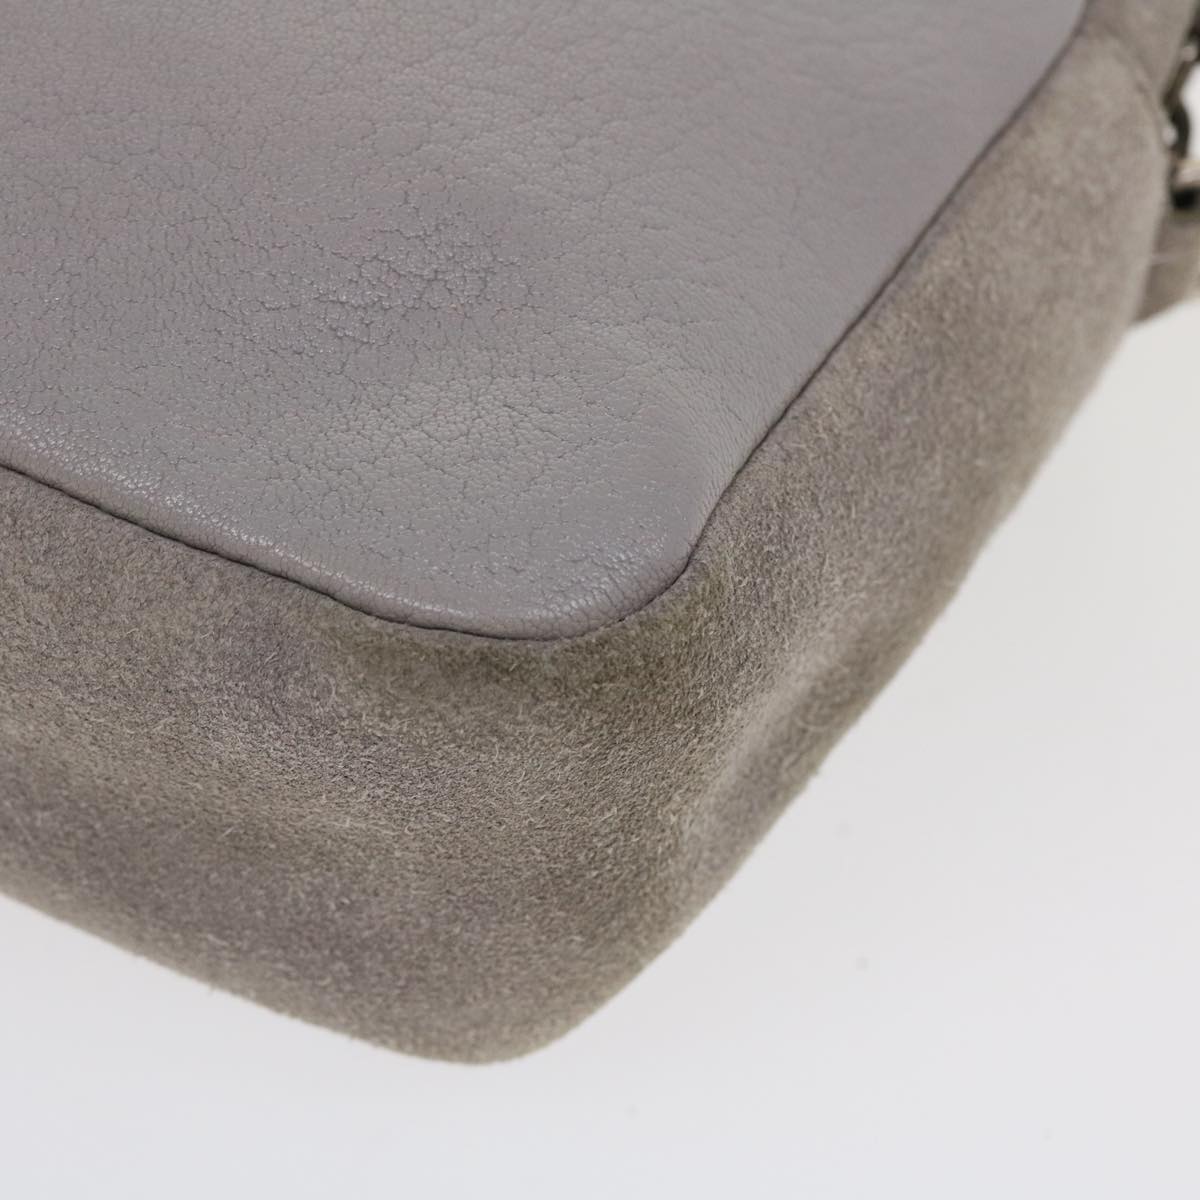 SAINT LAURENT Shoulder Bag Suede Leather Gray Auth ep783